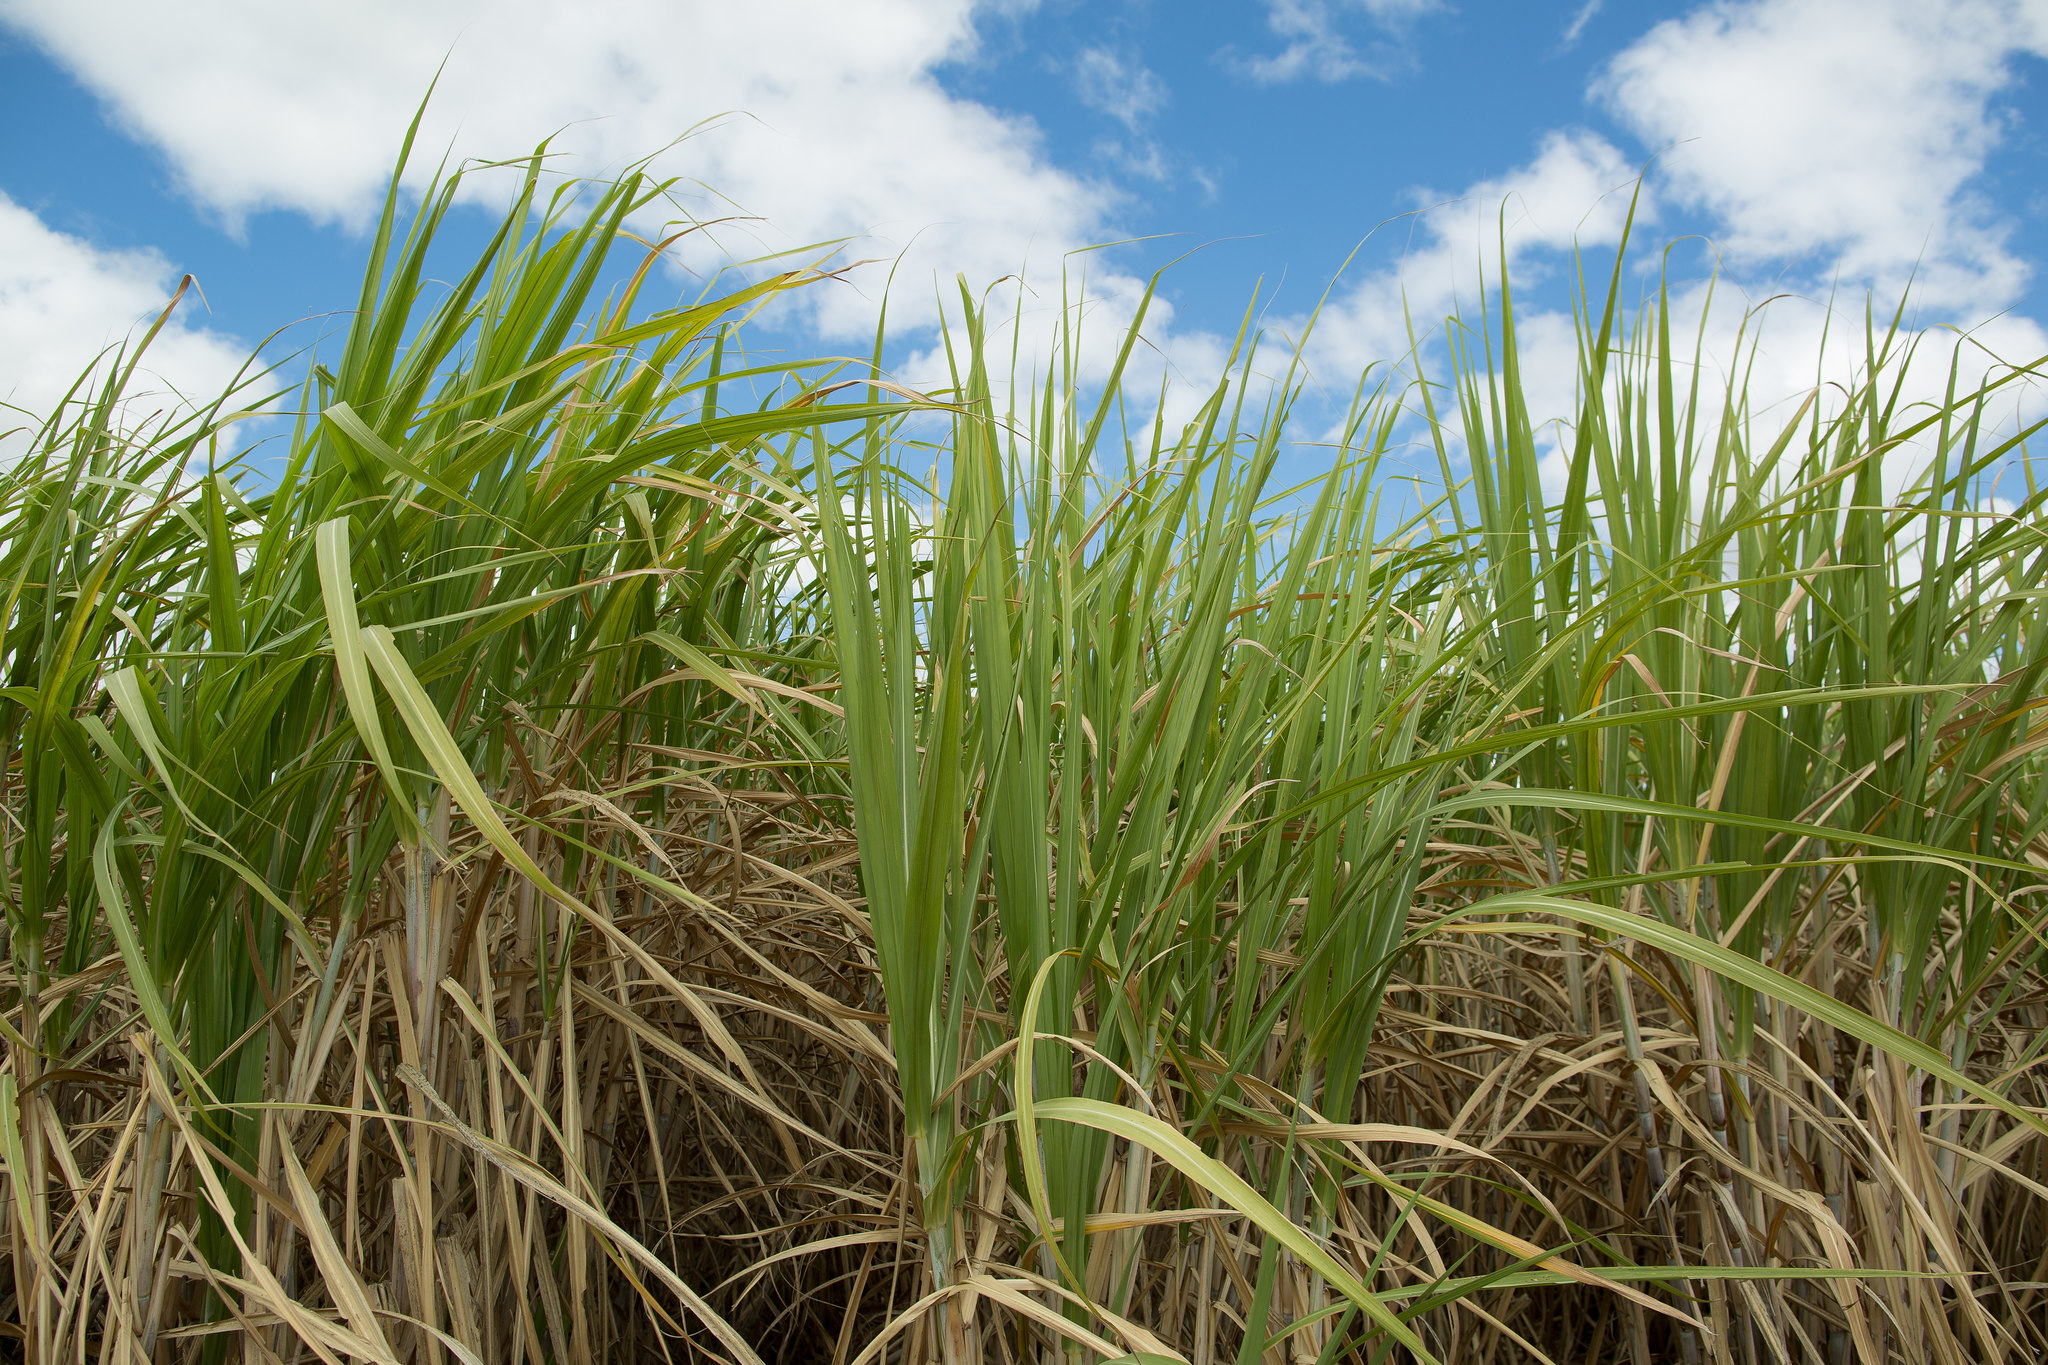 A moagem de cana-de-açúcar na segunda quinzena de setembro na região Centro-Sul atingiu 25,29 milhões de toneladas, registrando queda de 29,73% em relação à quantidade registrada em igual período do ano passado. - Foto: Wenderson Araujo/CNA